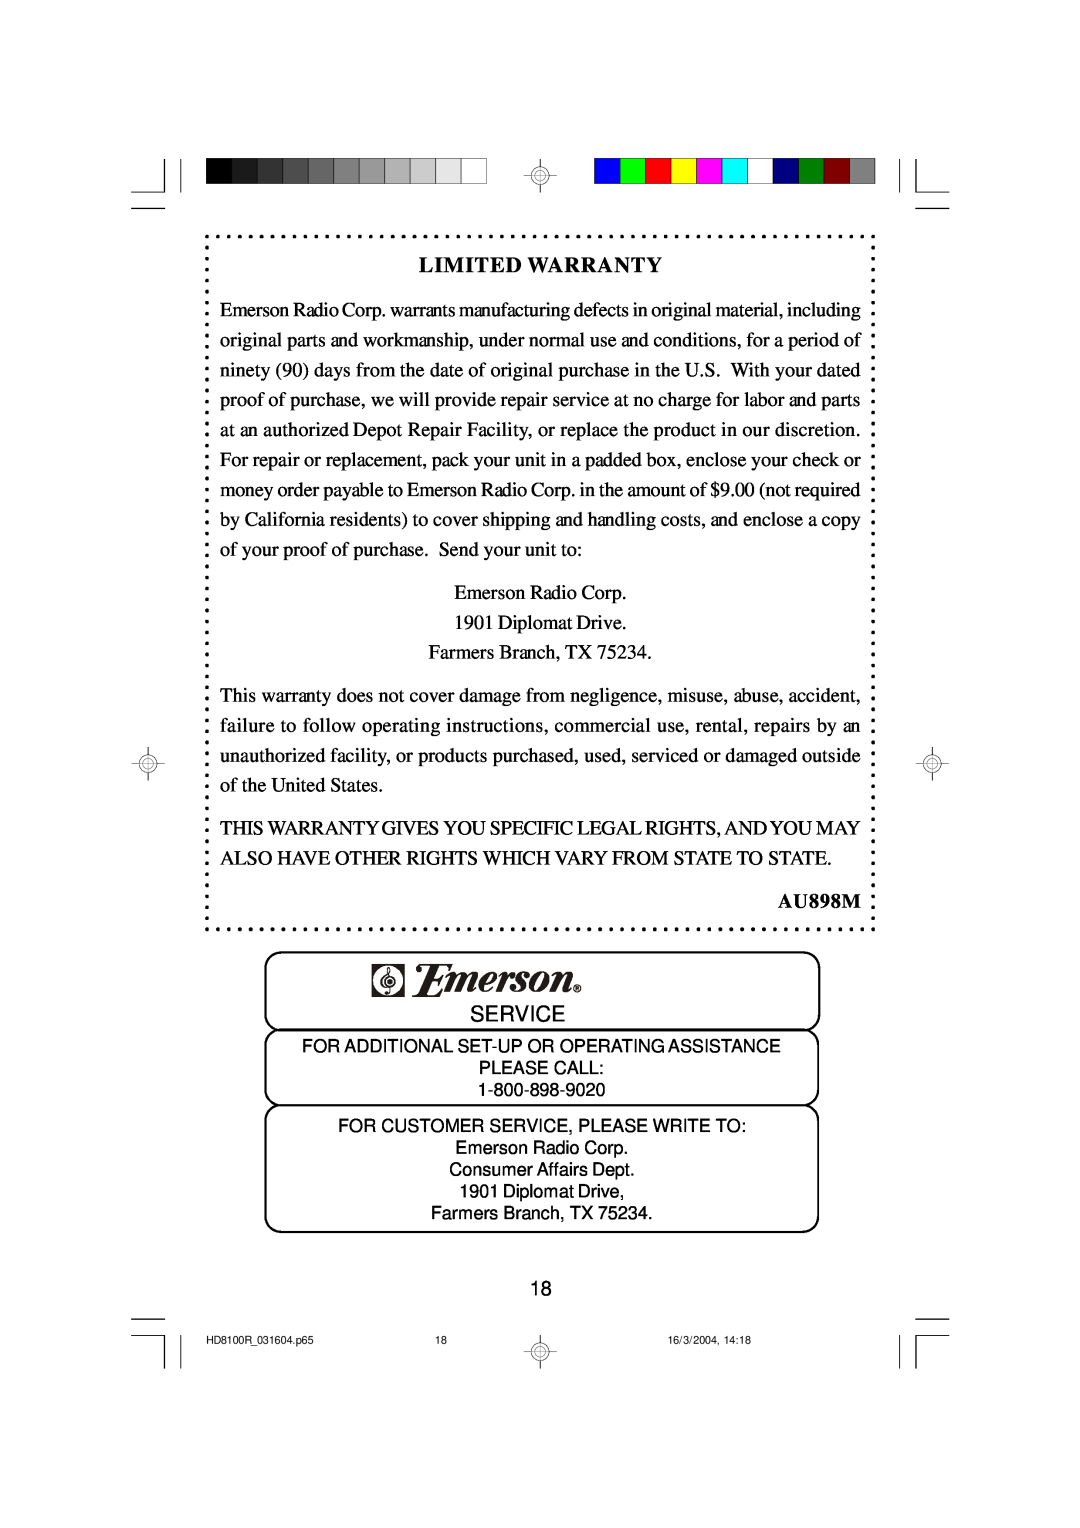 Emerson HD8100R owner manual Service, Limited Warranty, AU898M 